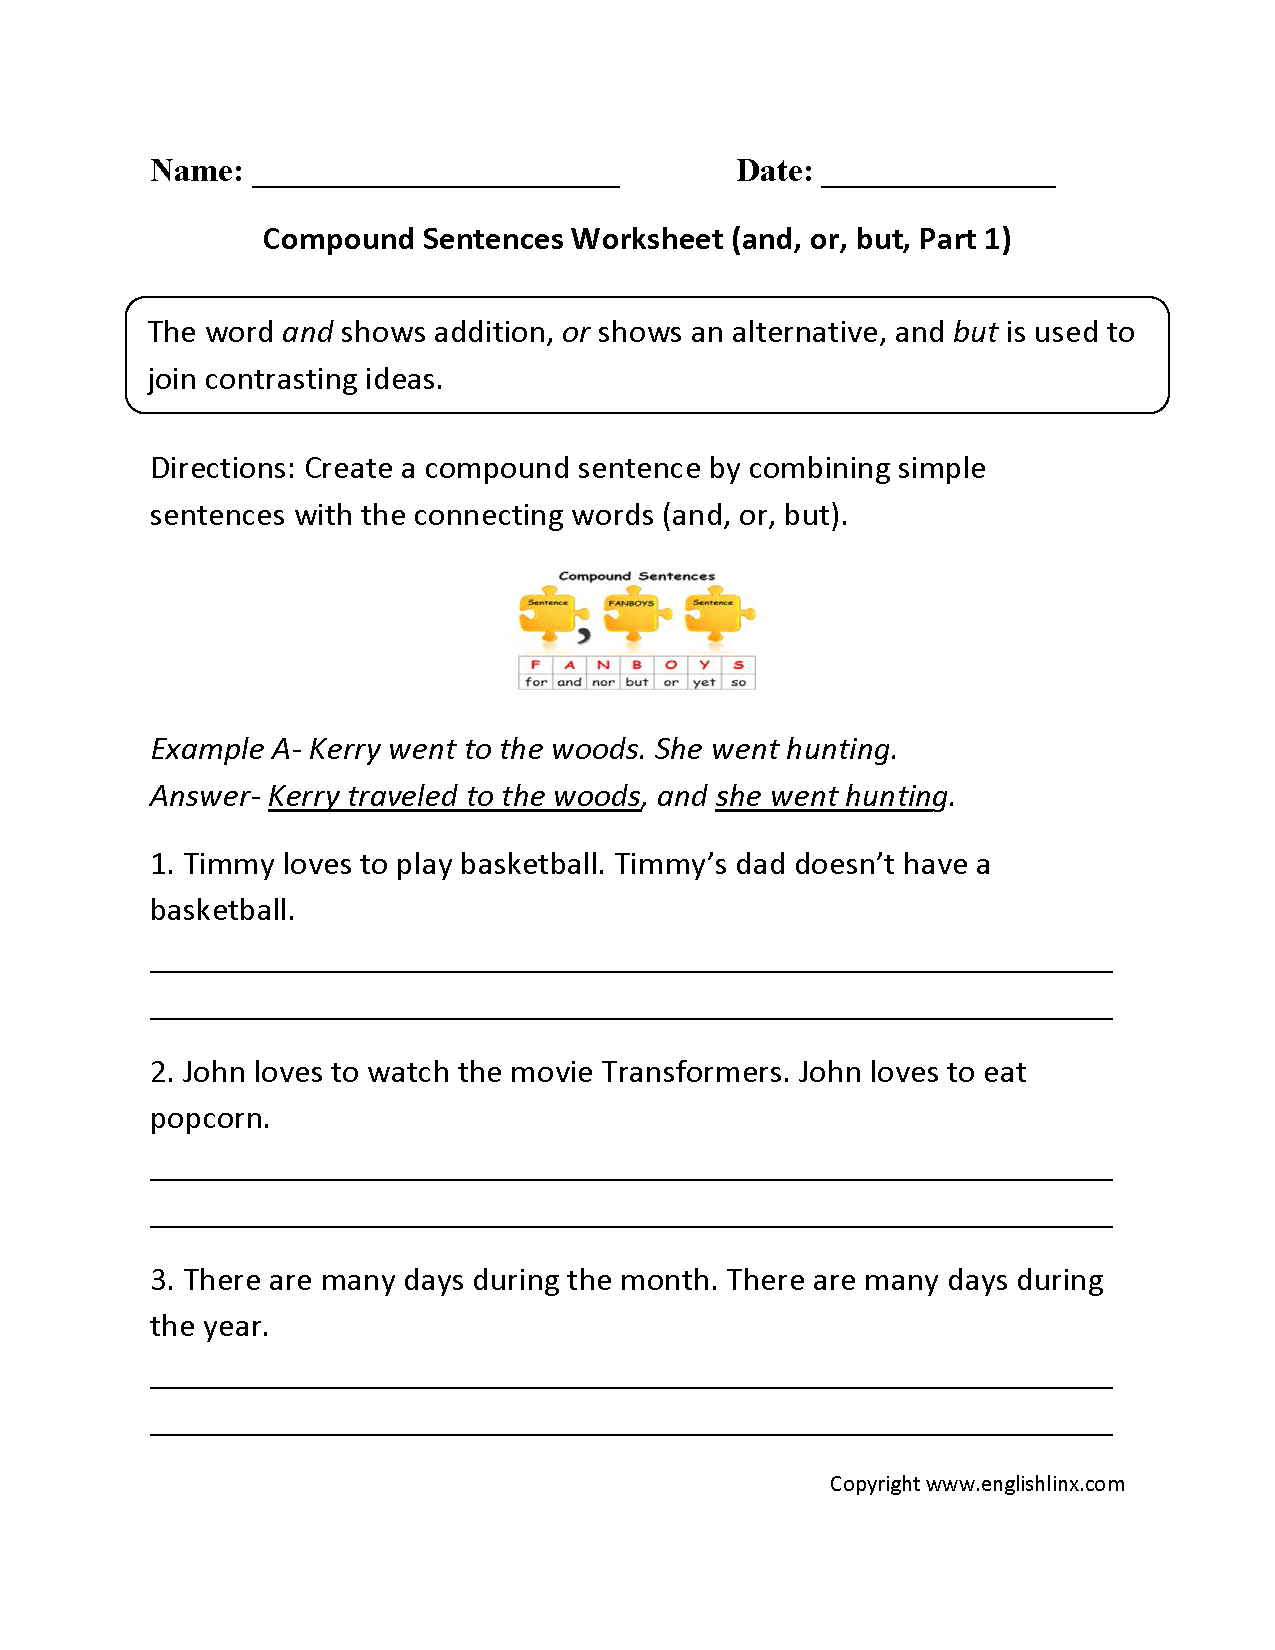 Compound Sentences Worksheets | Compound Sentences